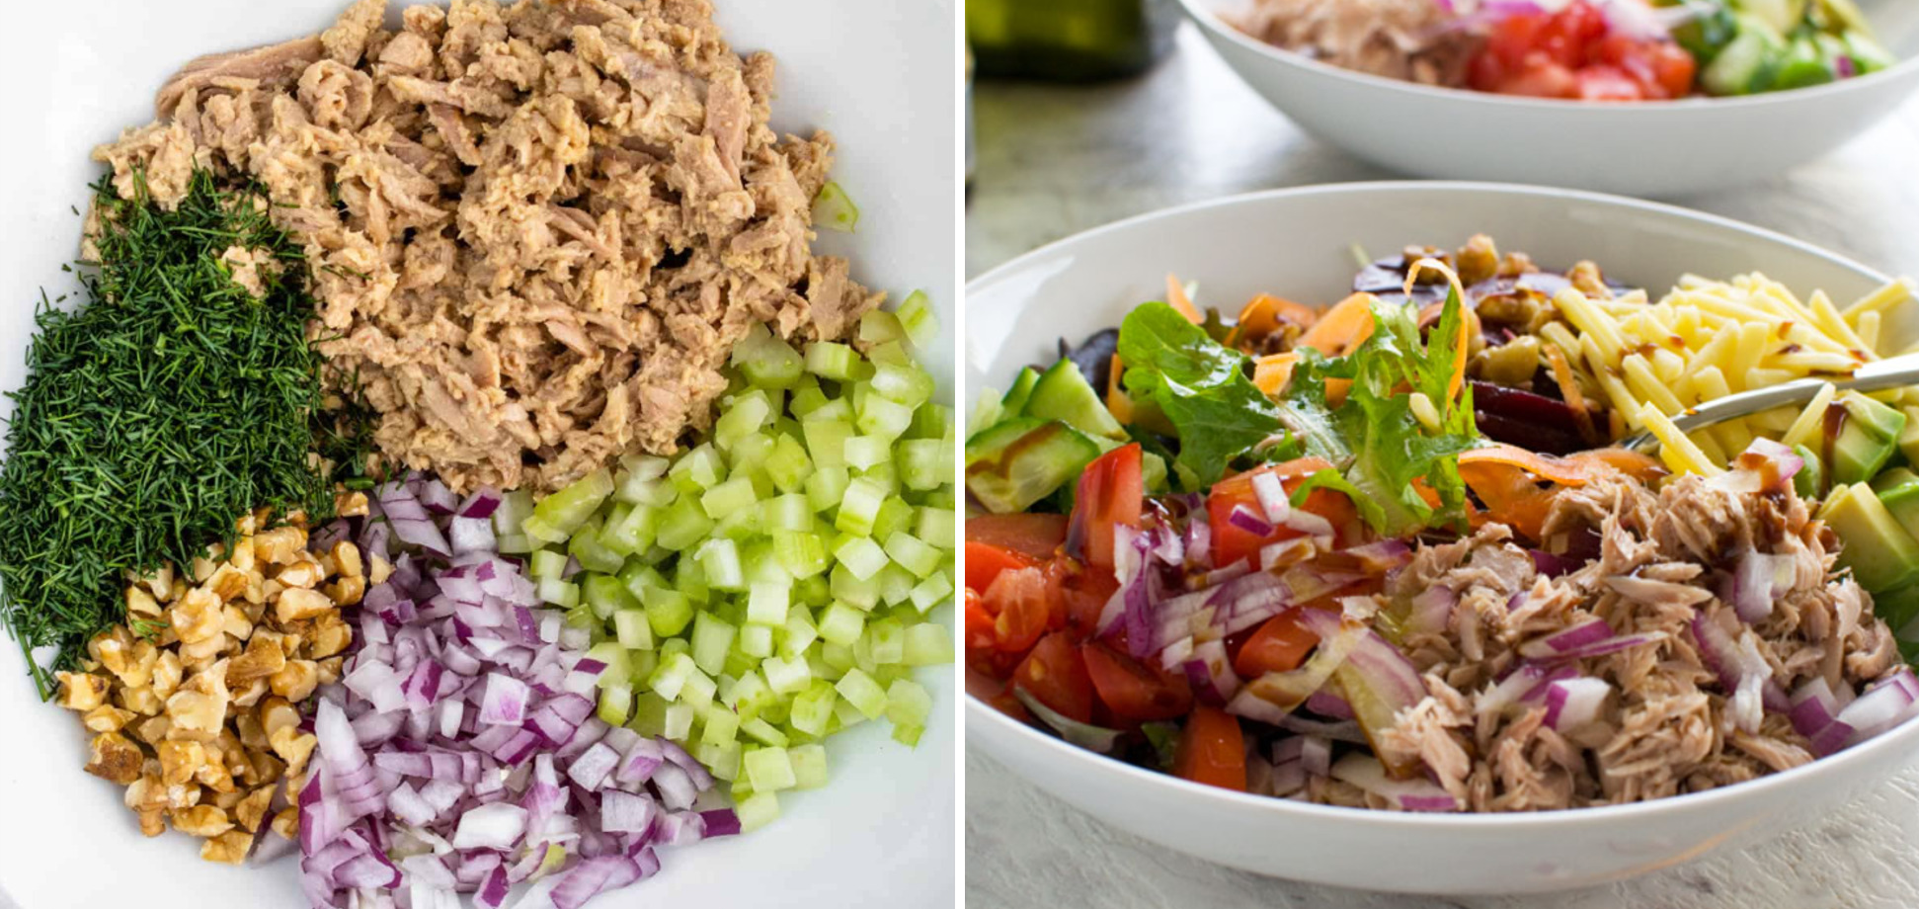 Как приготовить салат с тунцом